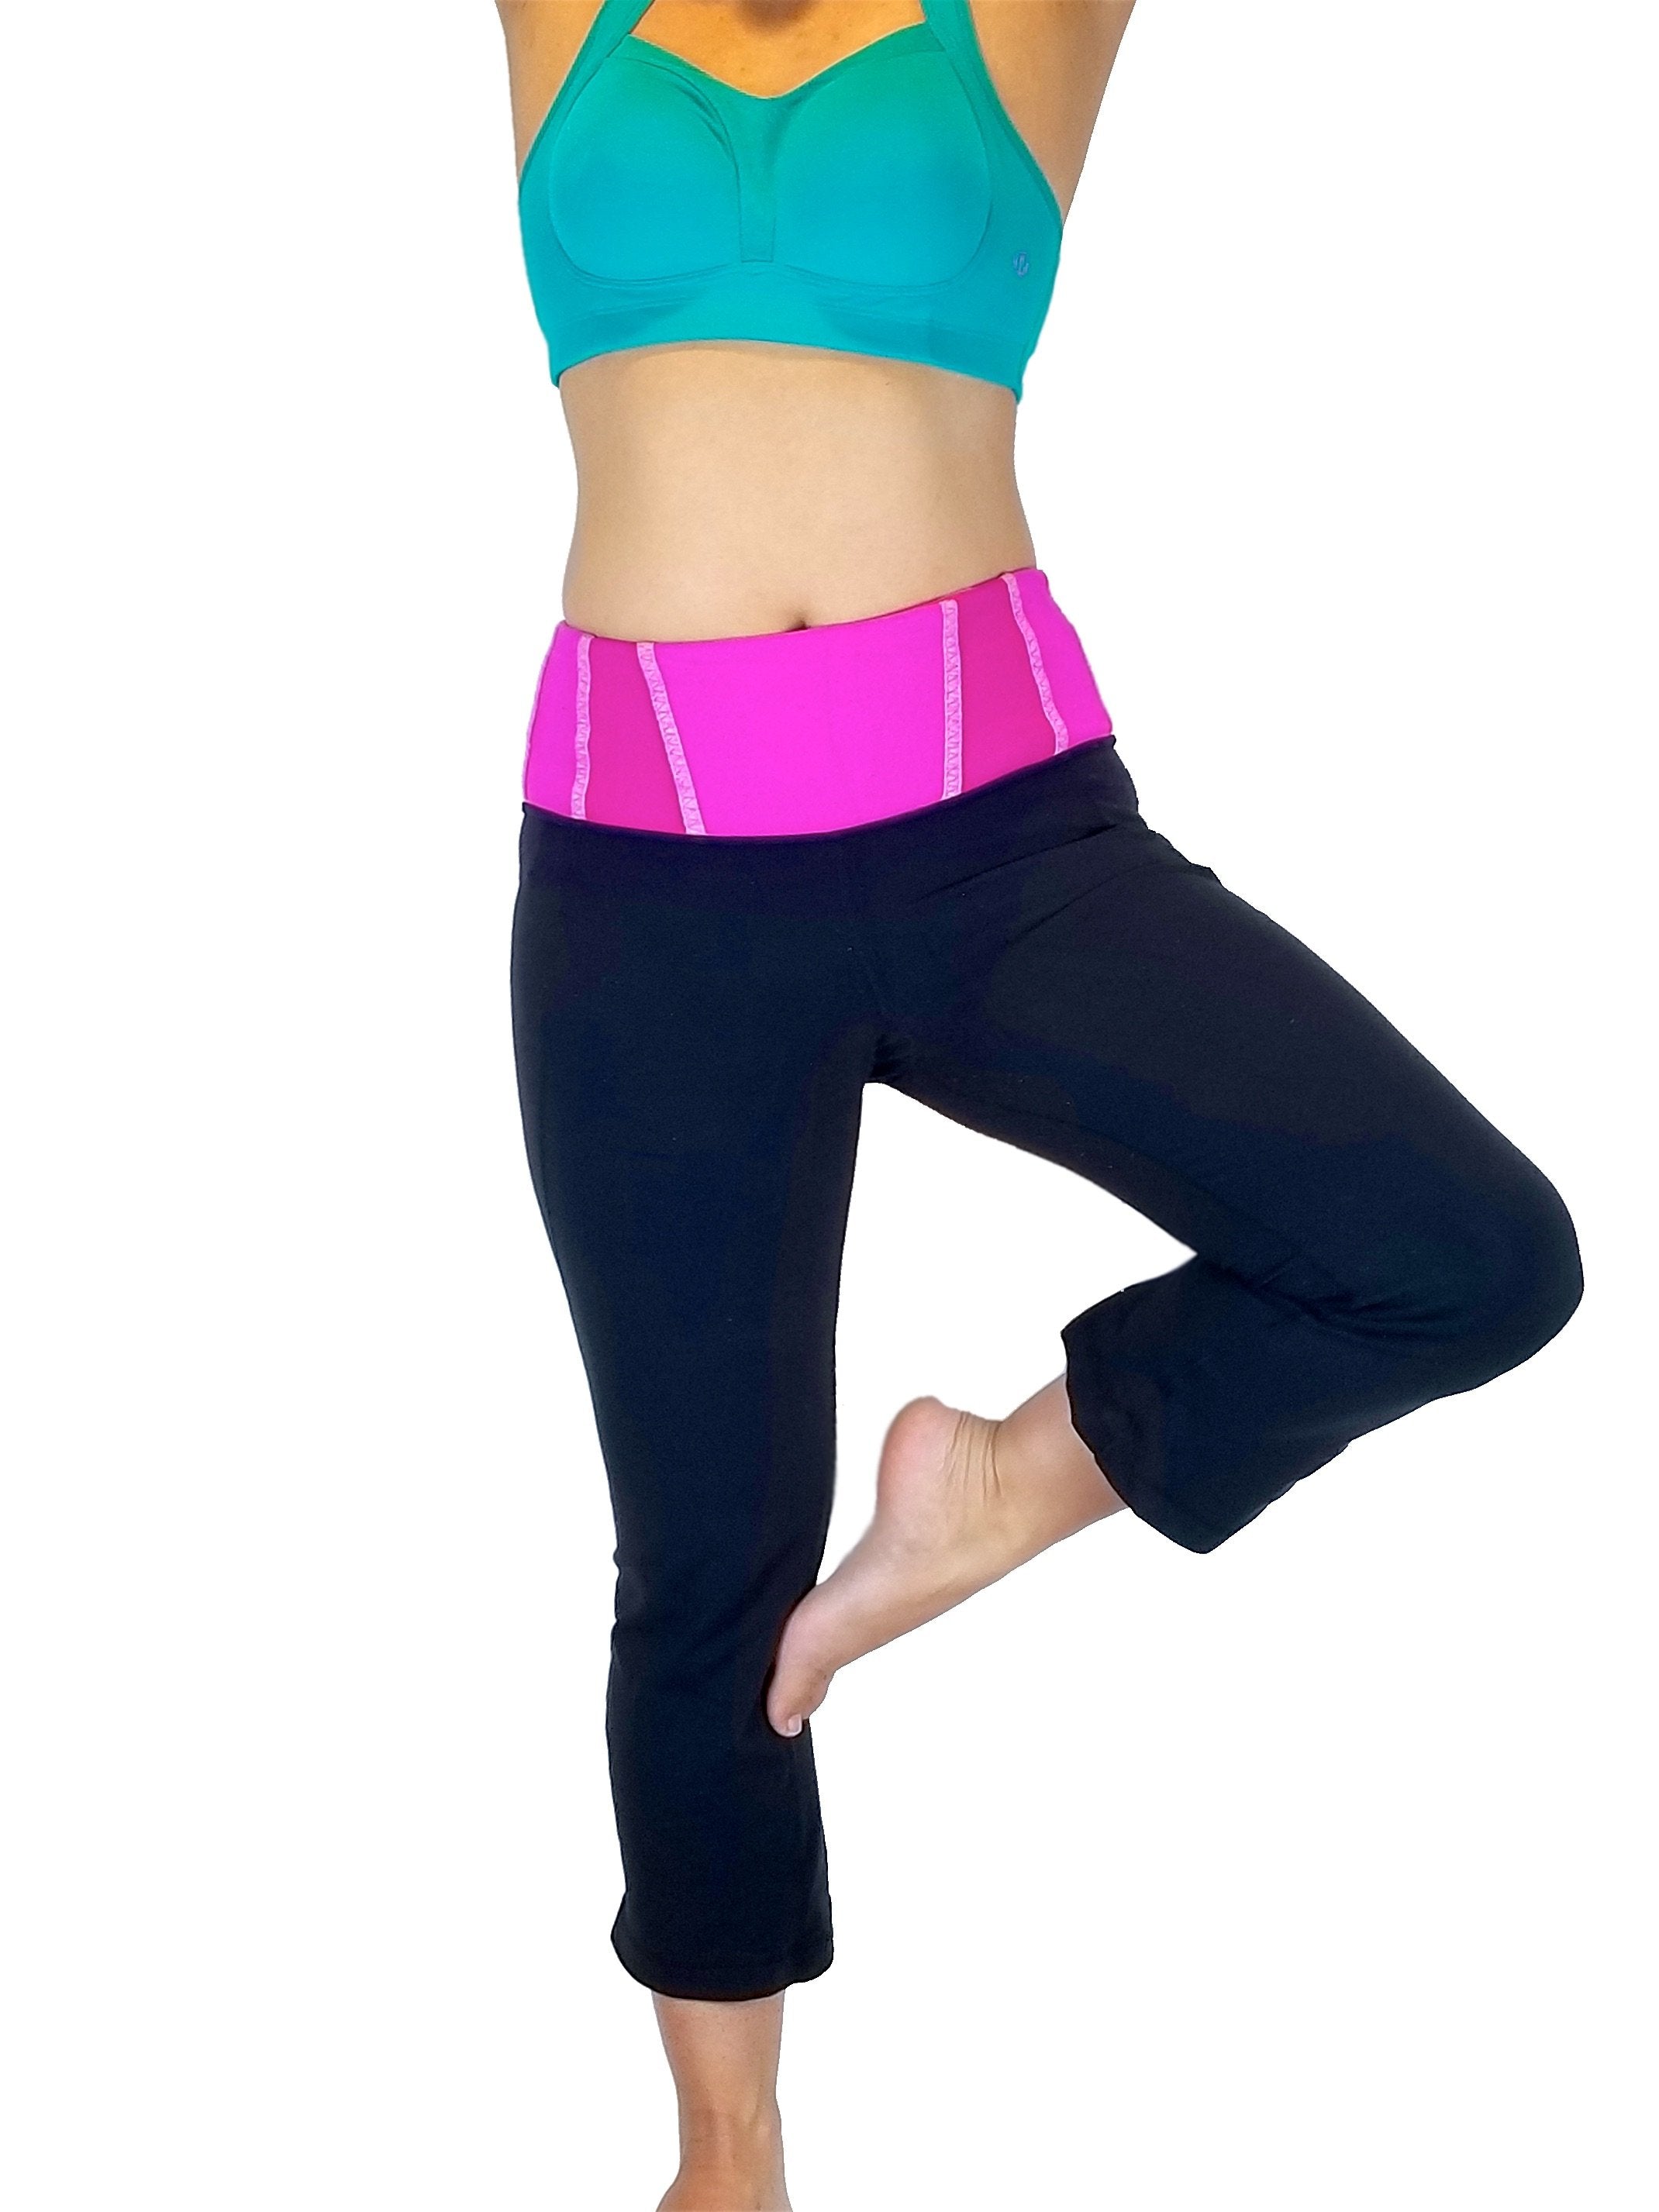 Women's Lululemon Yoga Pants Size 6